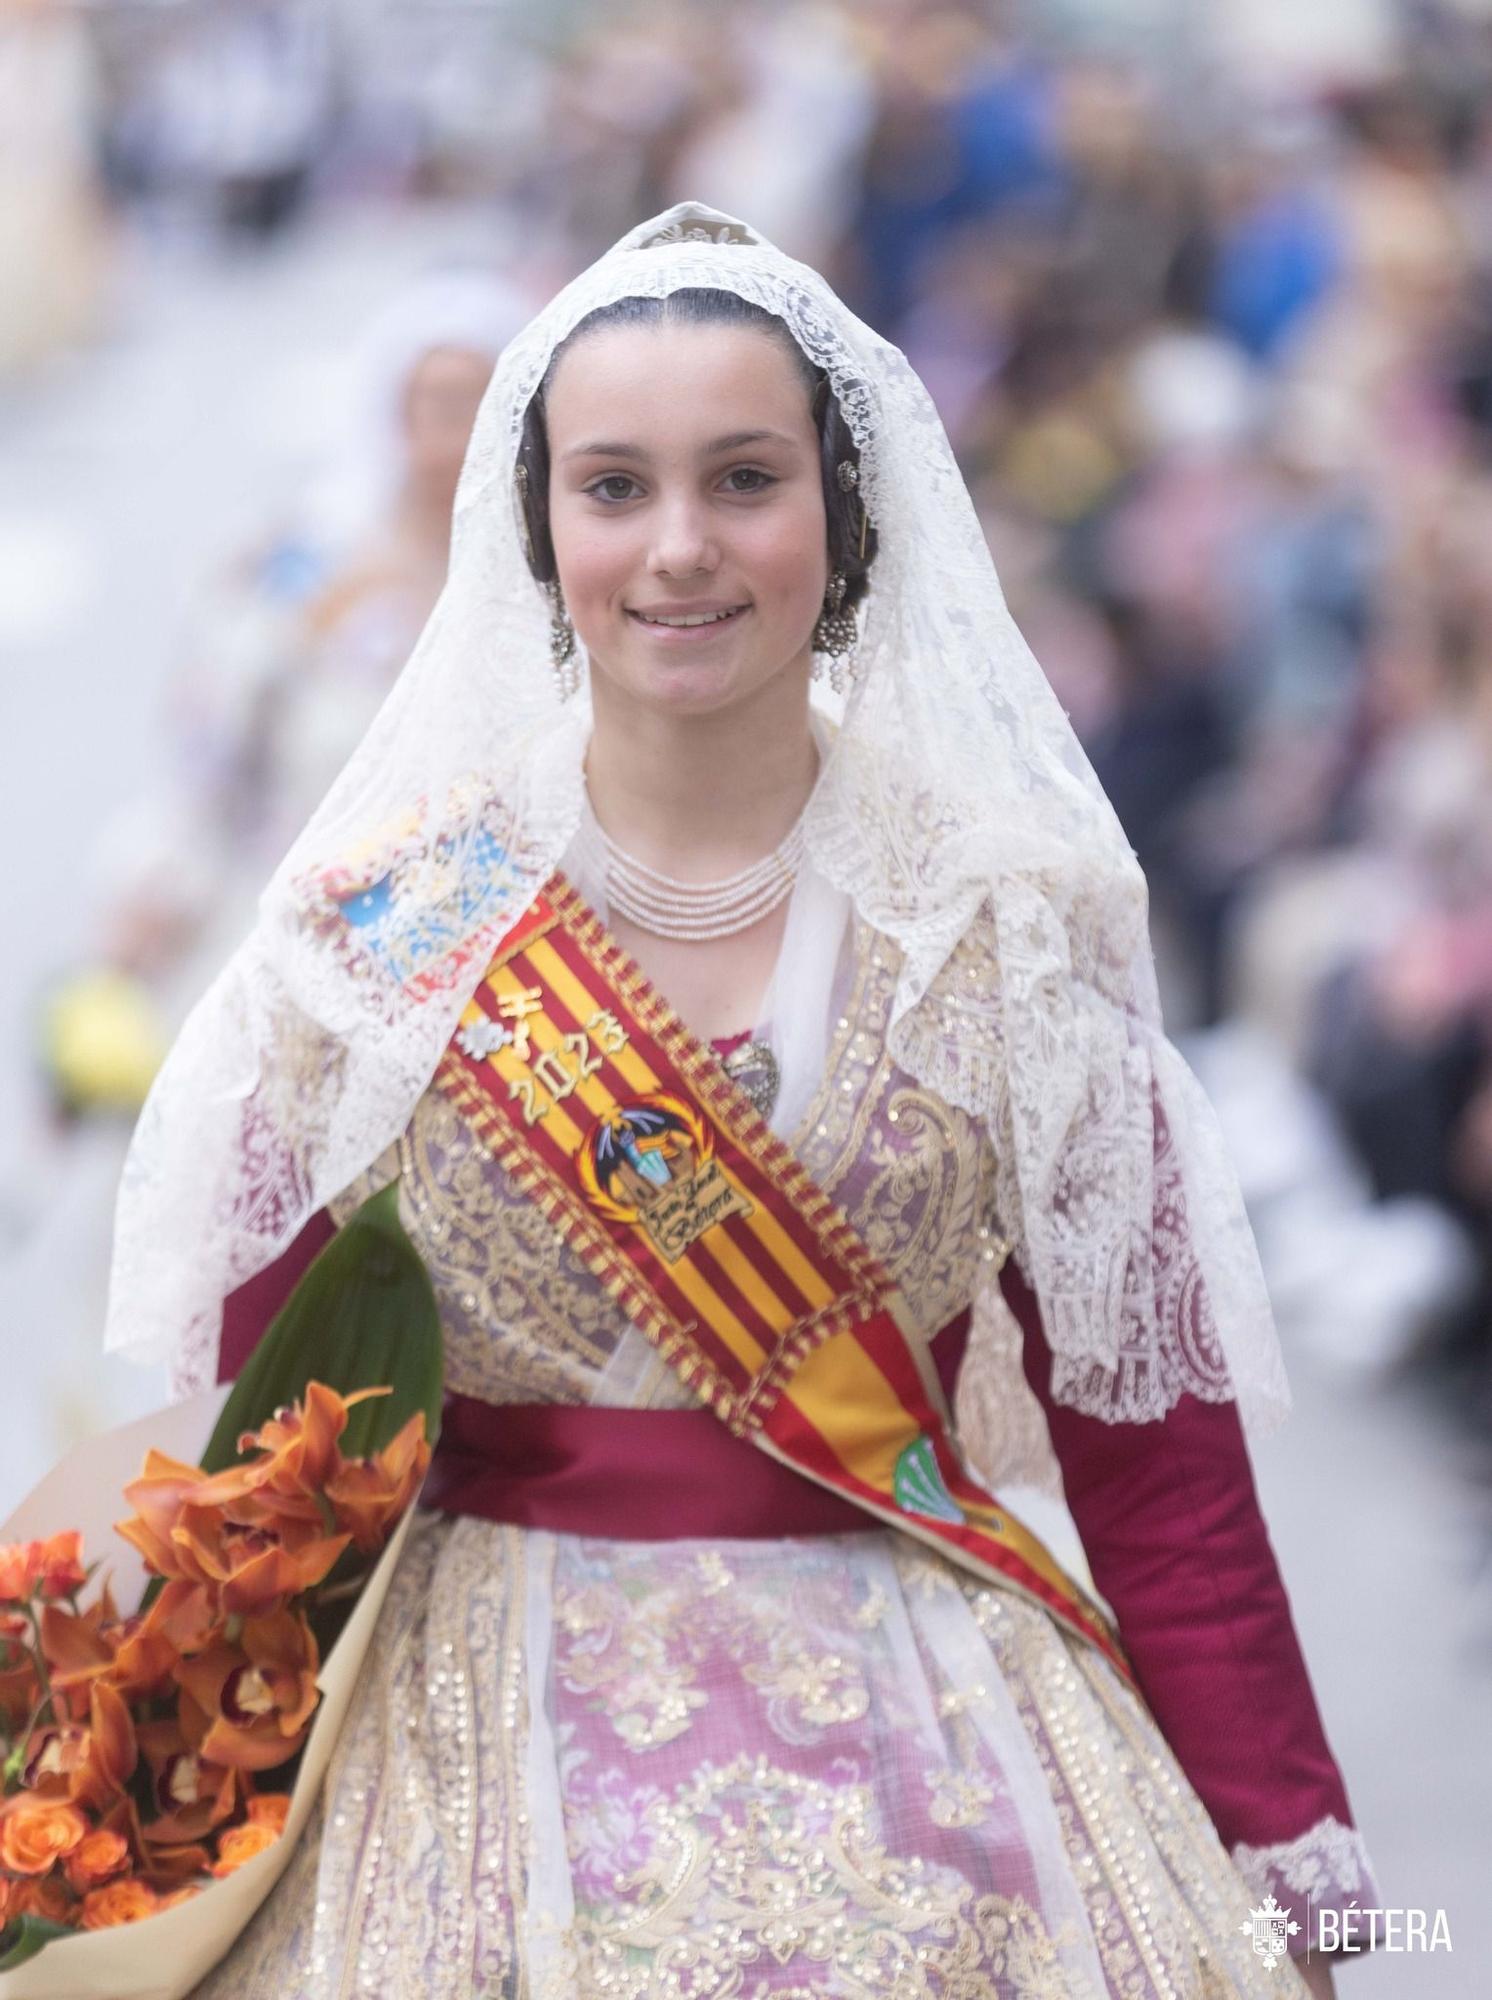 Bétera celebra la Ofrenda a la Mare de Déu de las Fallas de 2023